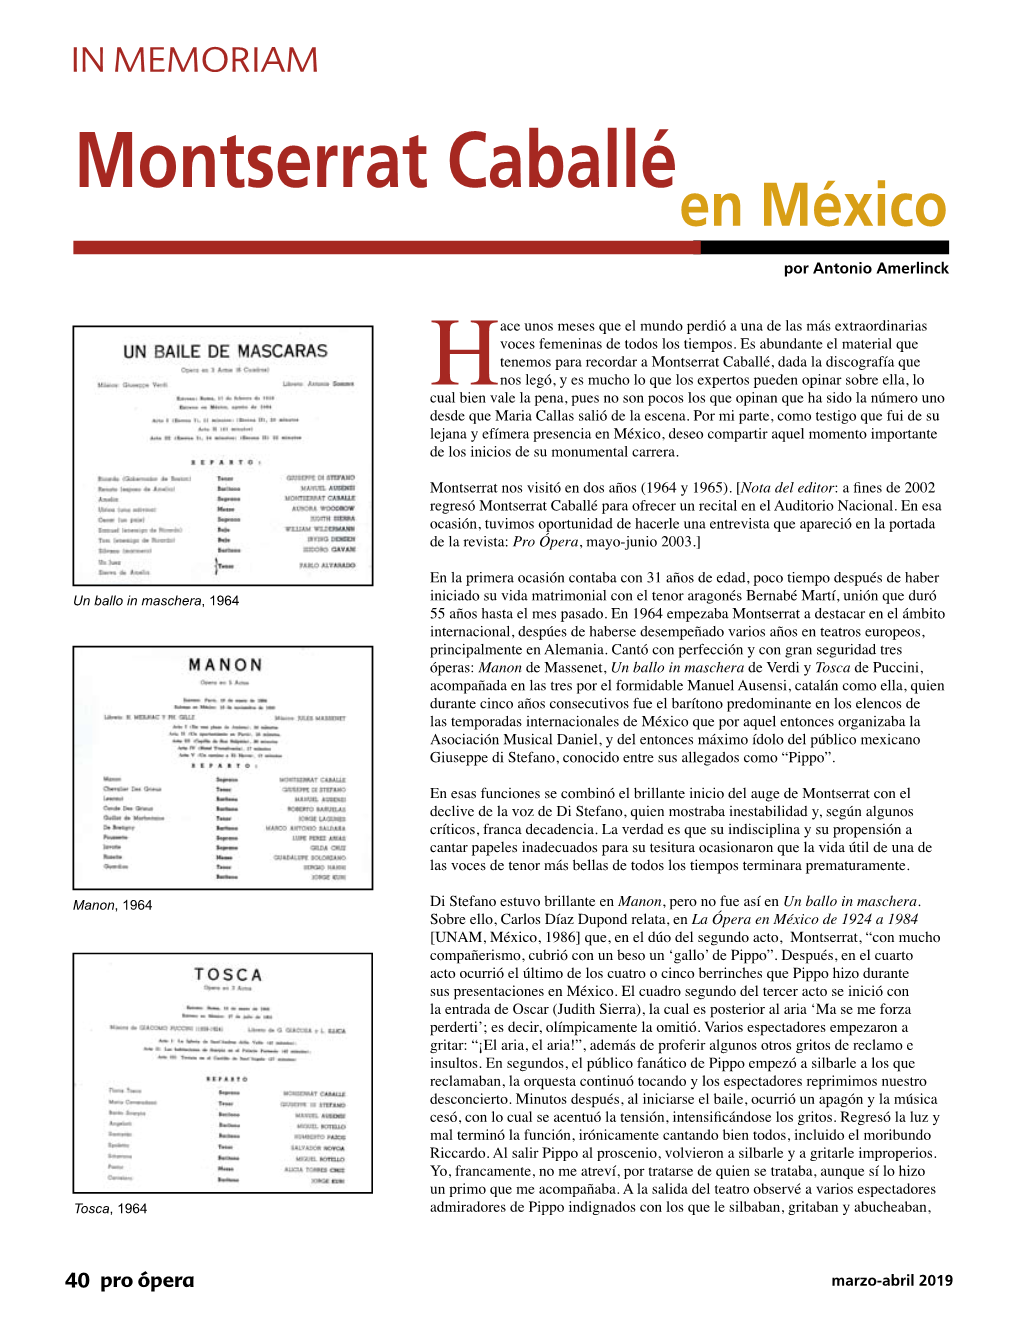 Montserrat Caballé En México